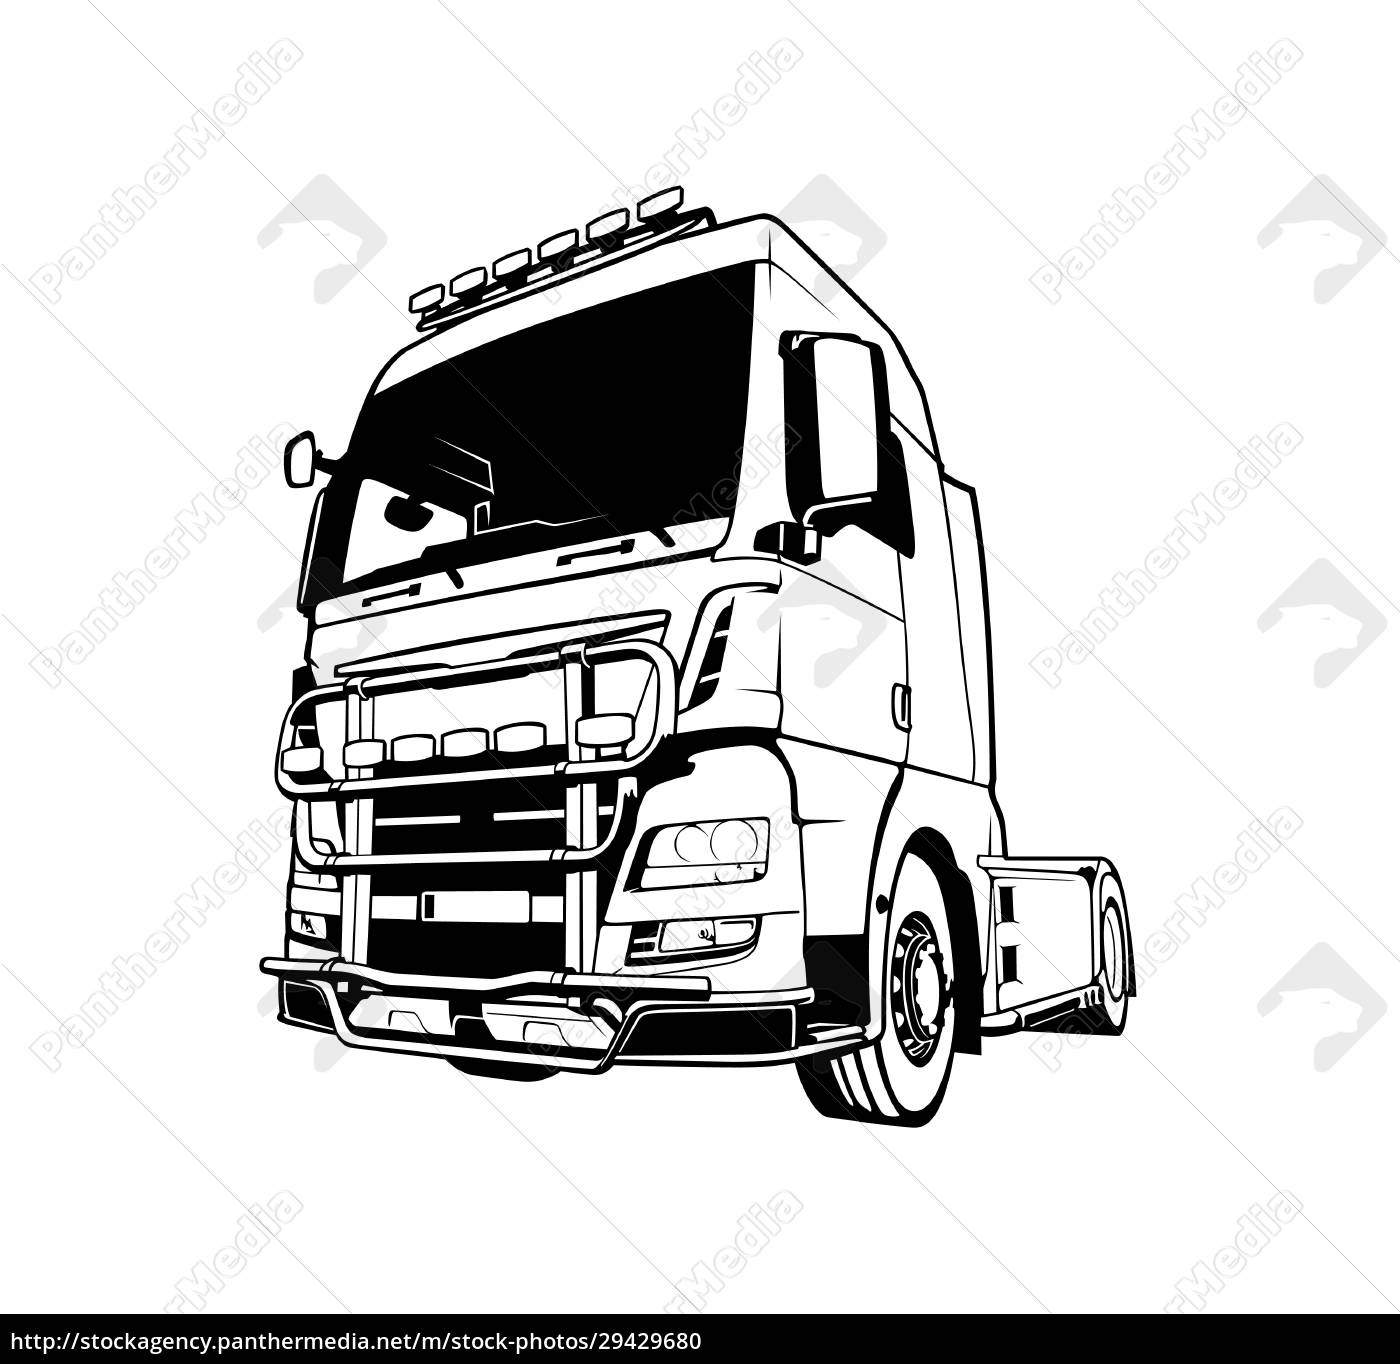 Um desenho preto e branco de um caminhão.